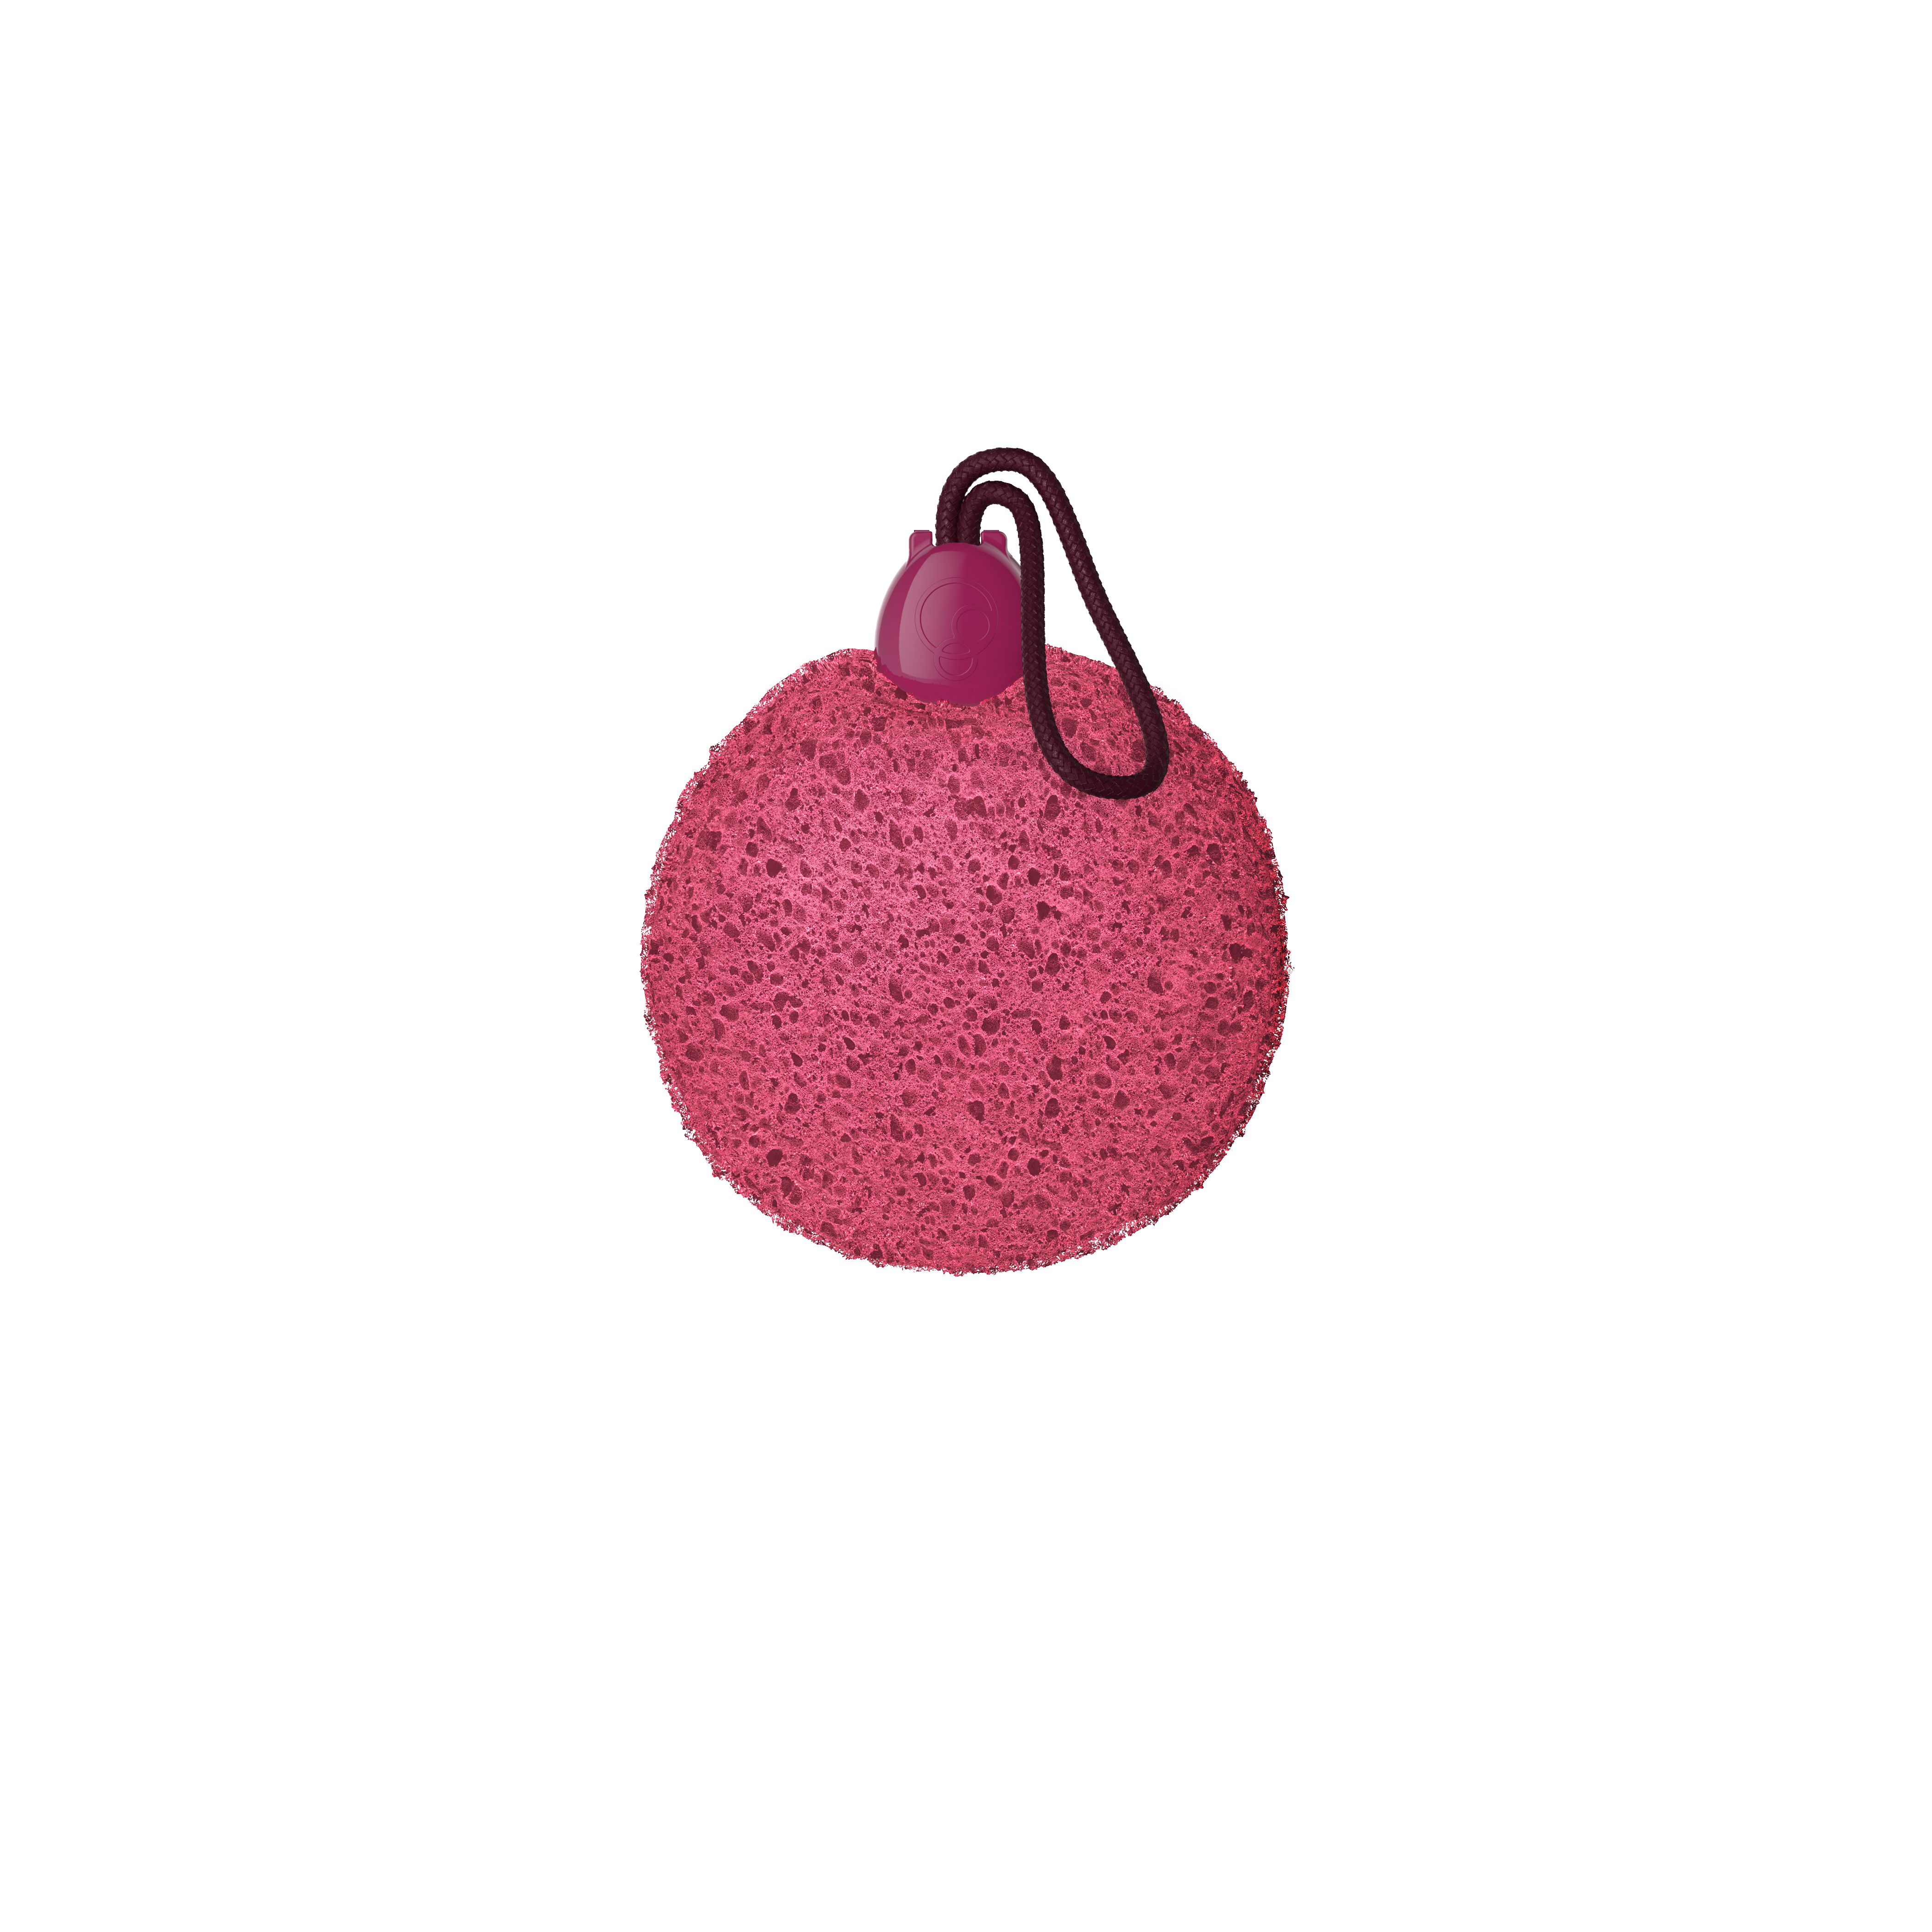 FOAMIE Sponge - The Berry Best